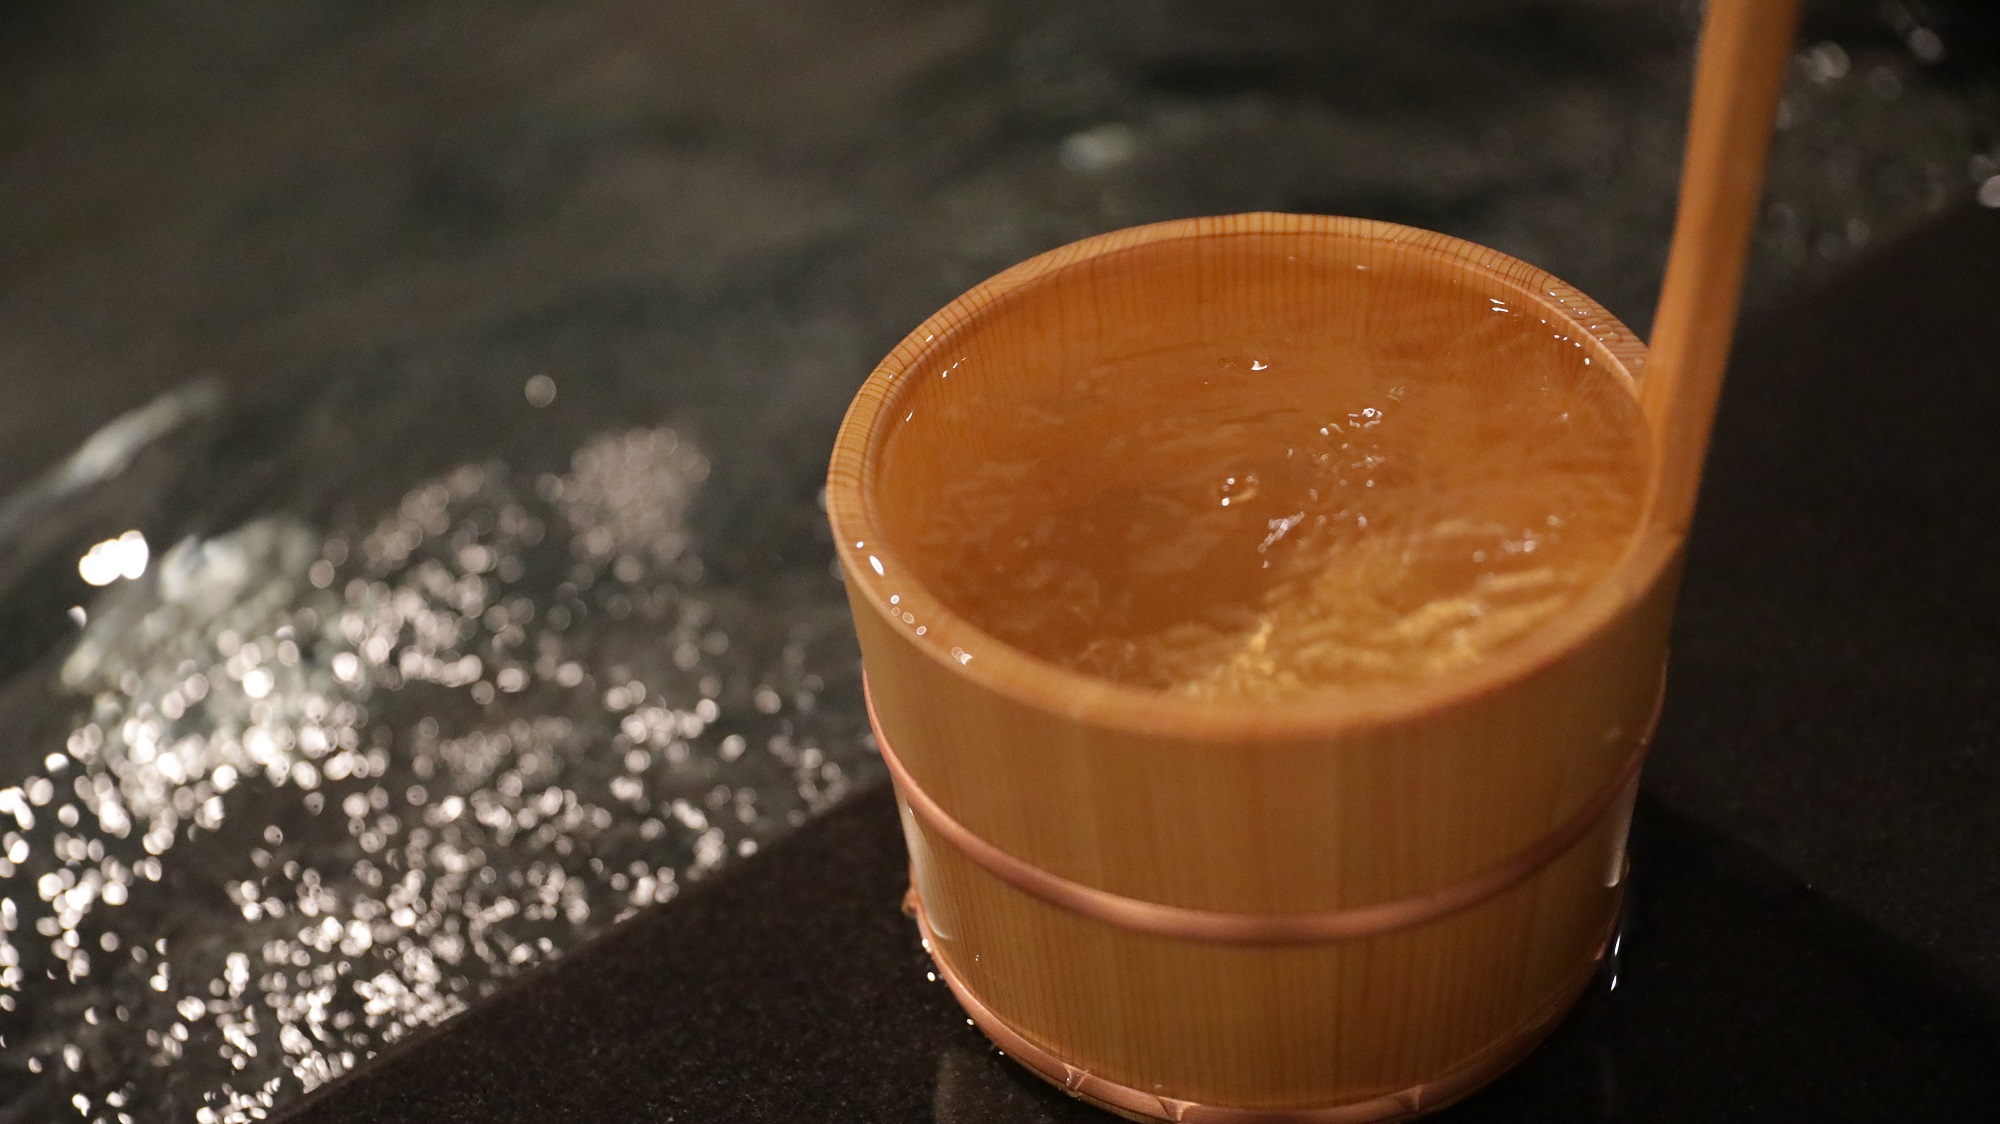 石川県名湯の別所新加賀温泉で体の芯から温まっていただけます